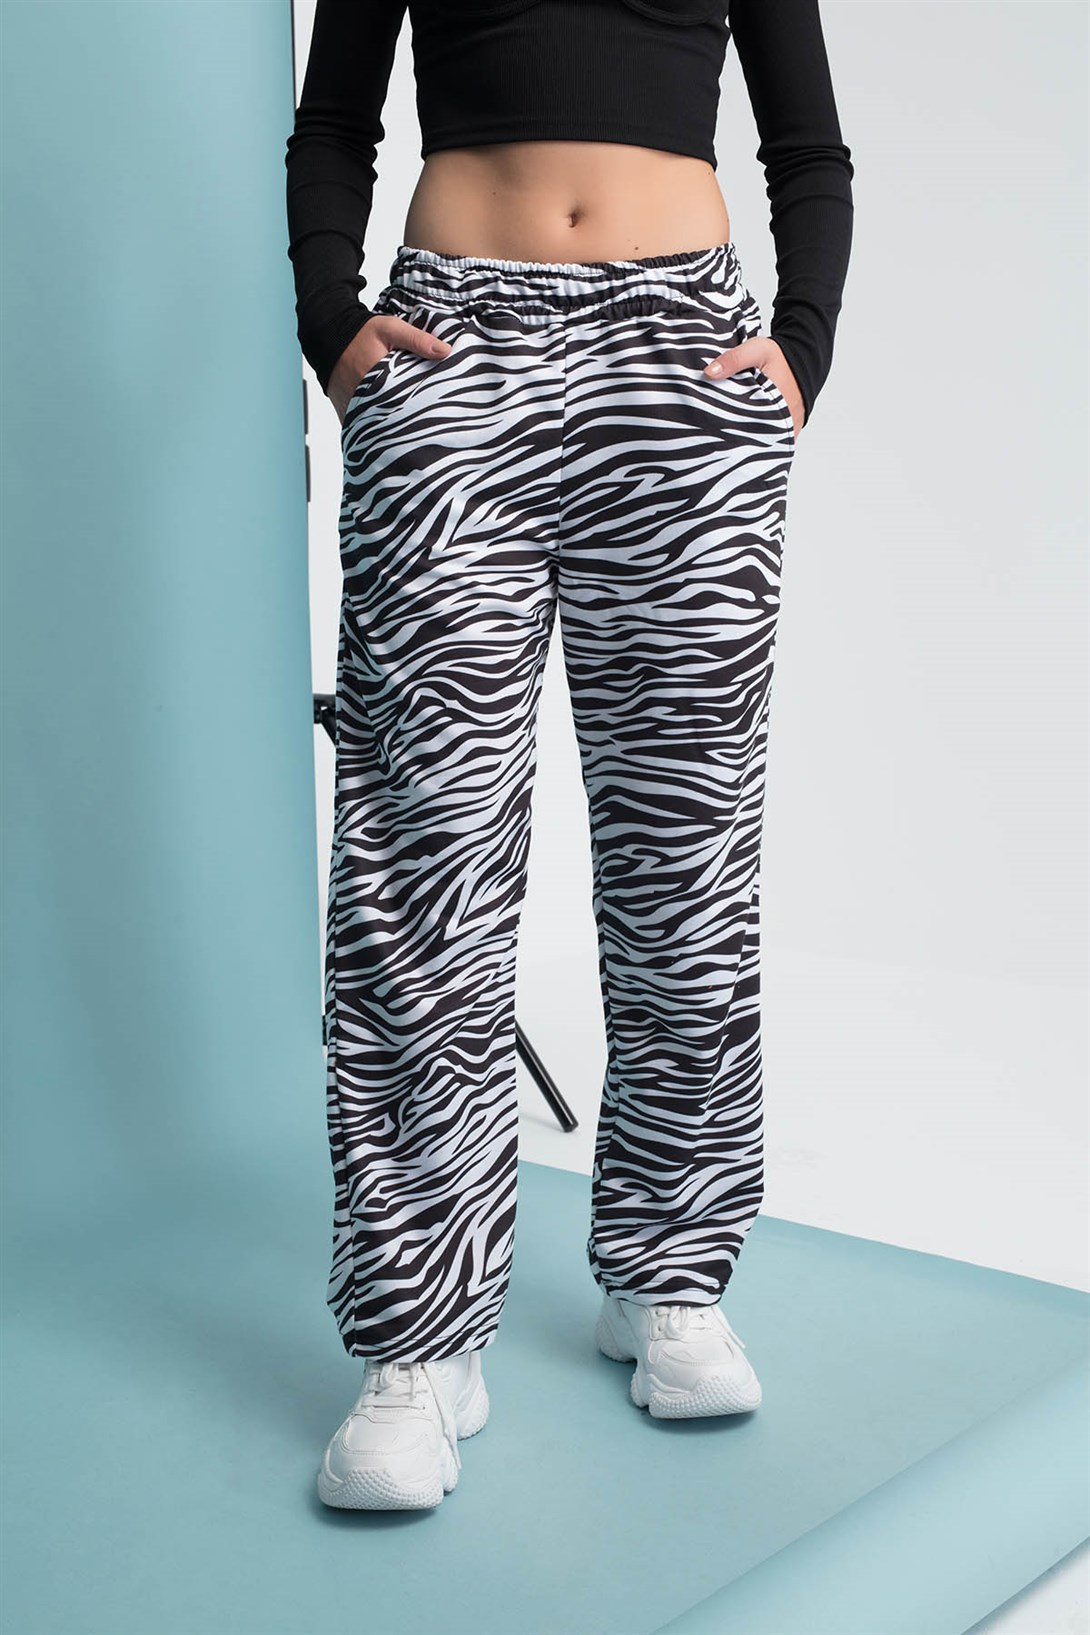 Trendiz Zebra Kadın Eşofman Altı Siyah 111202